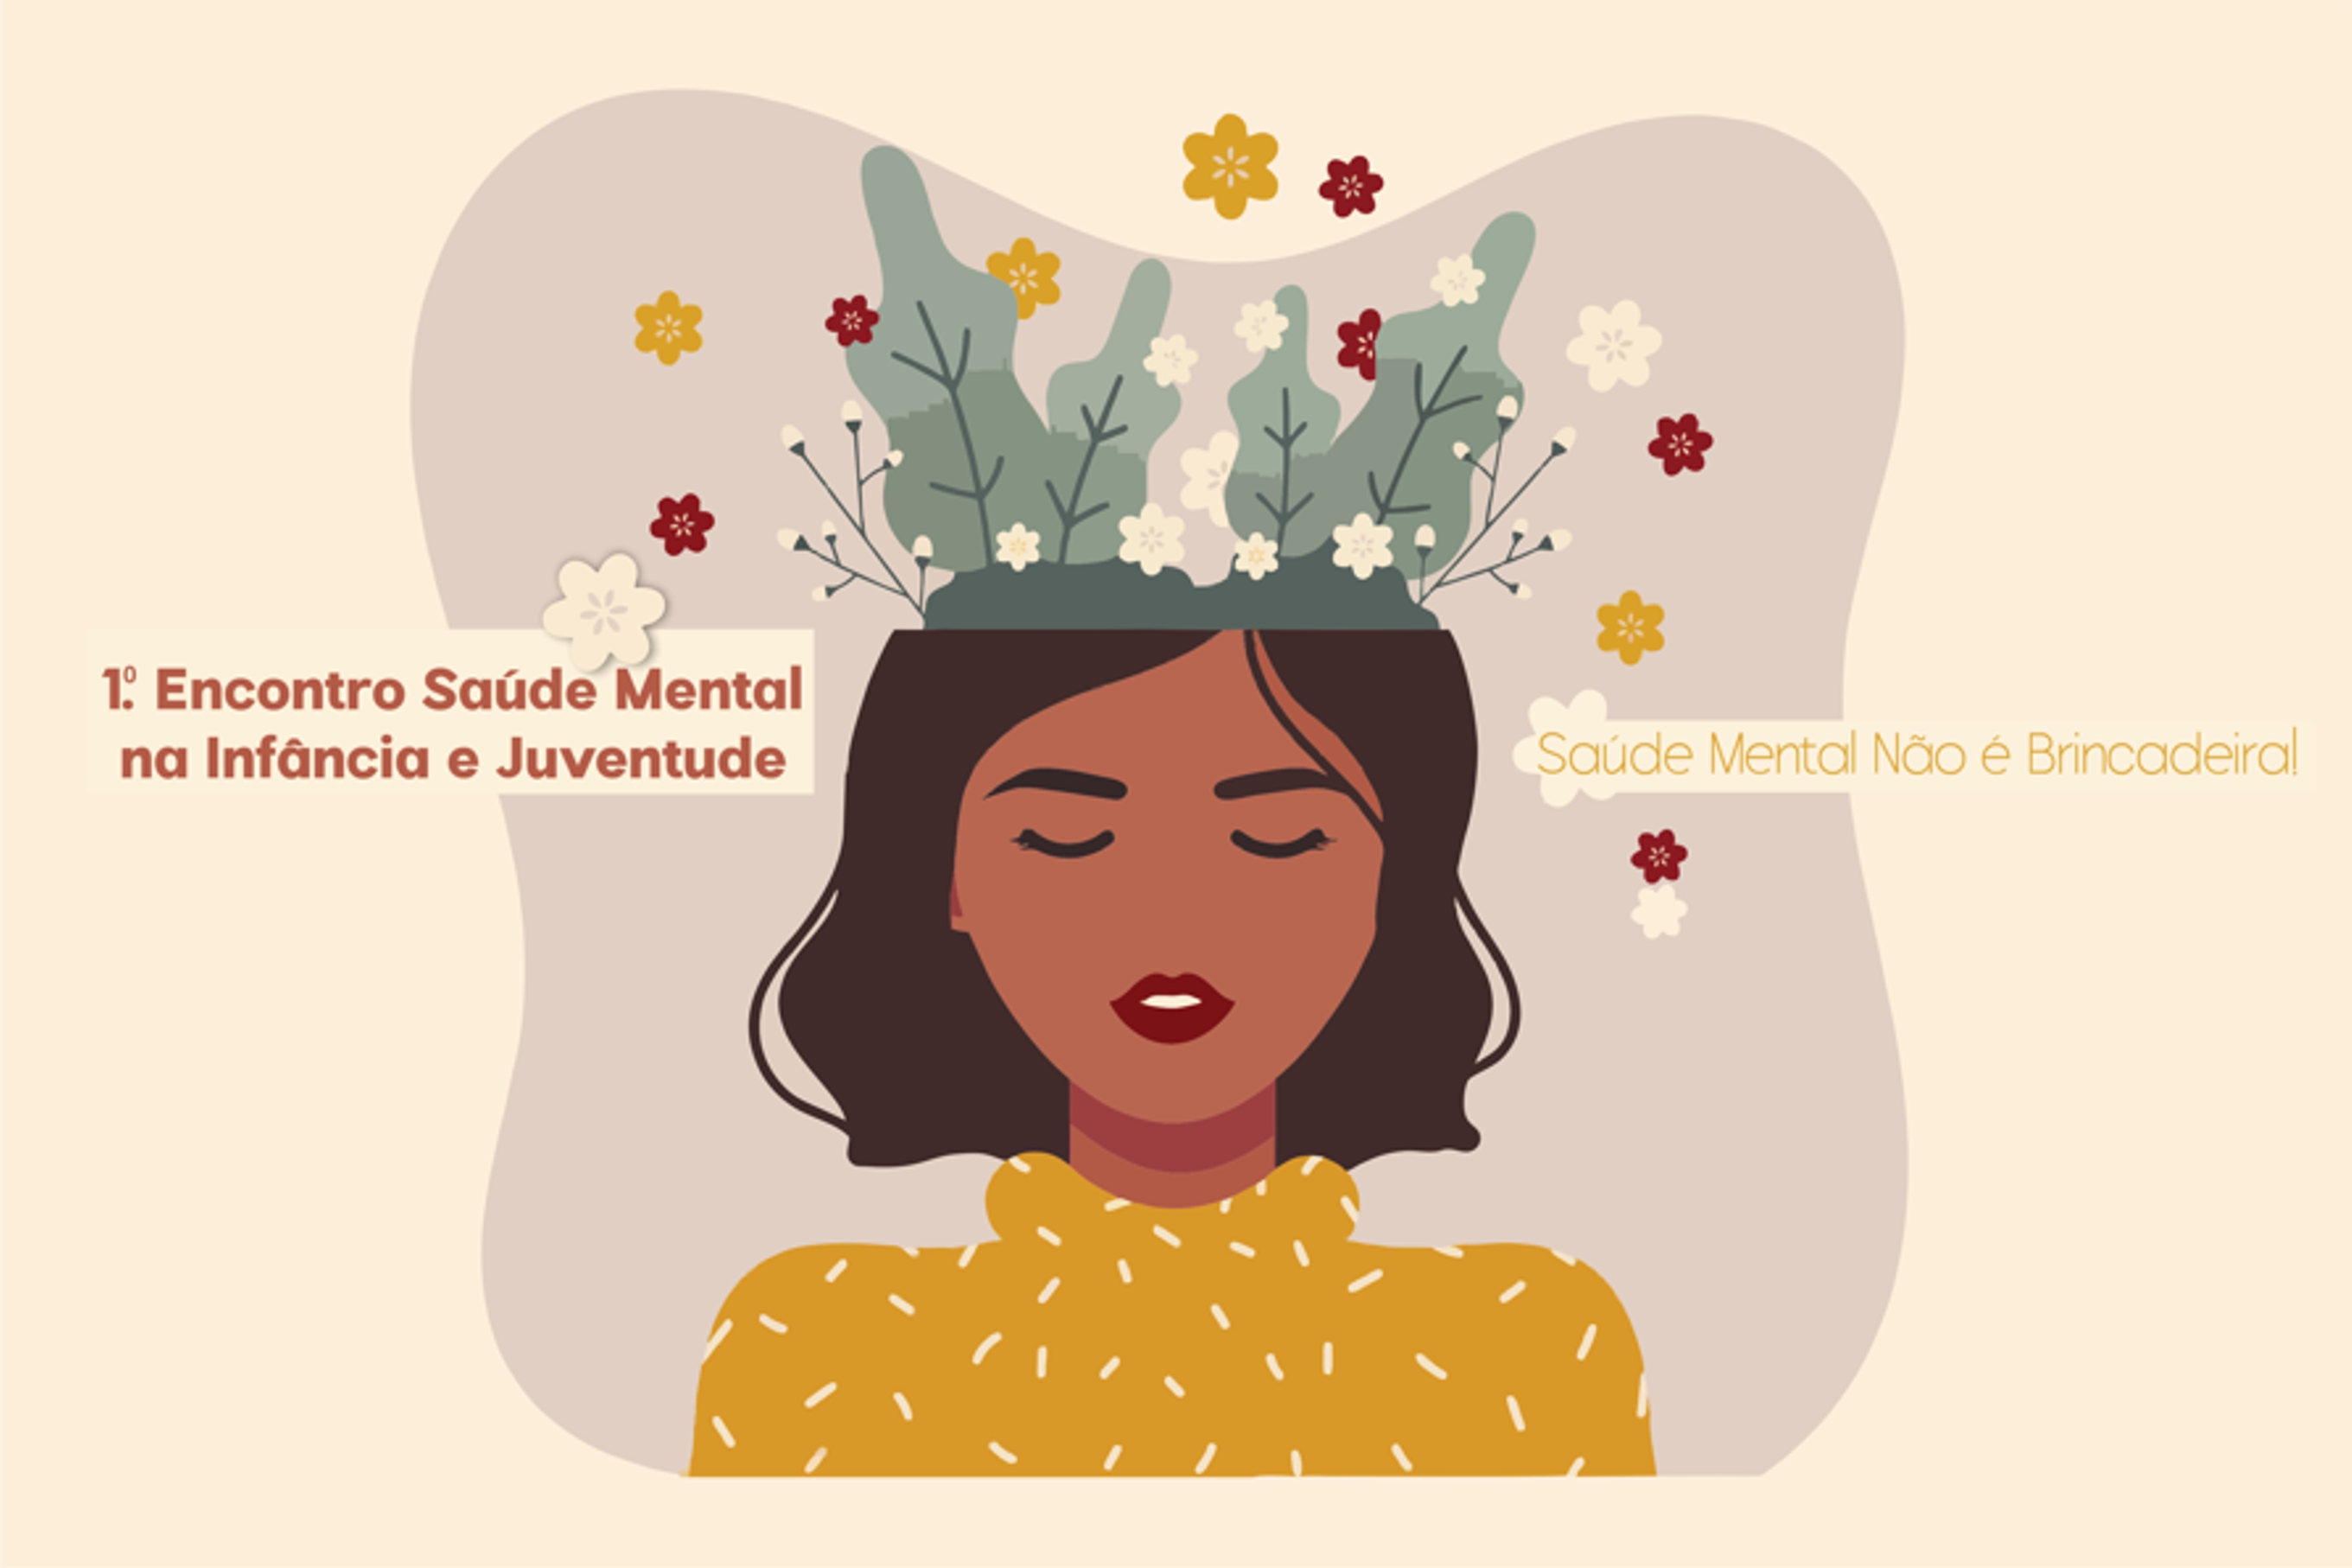 Cartaz com fundo de cor pastel, com algum lettering, e infografia de uma mulher com plantas e flores de várias cores na cabeça.